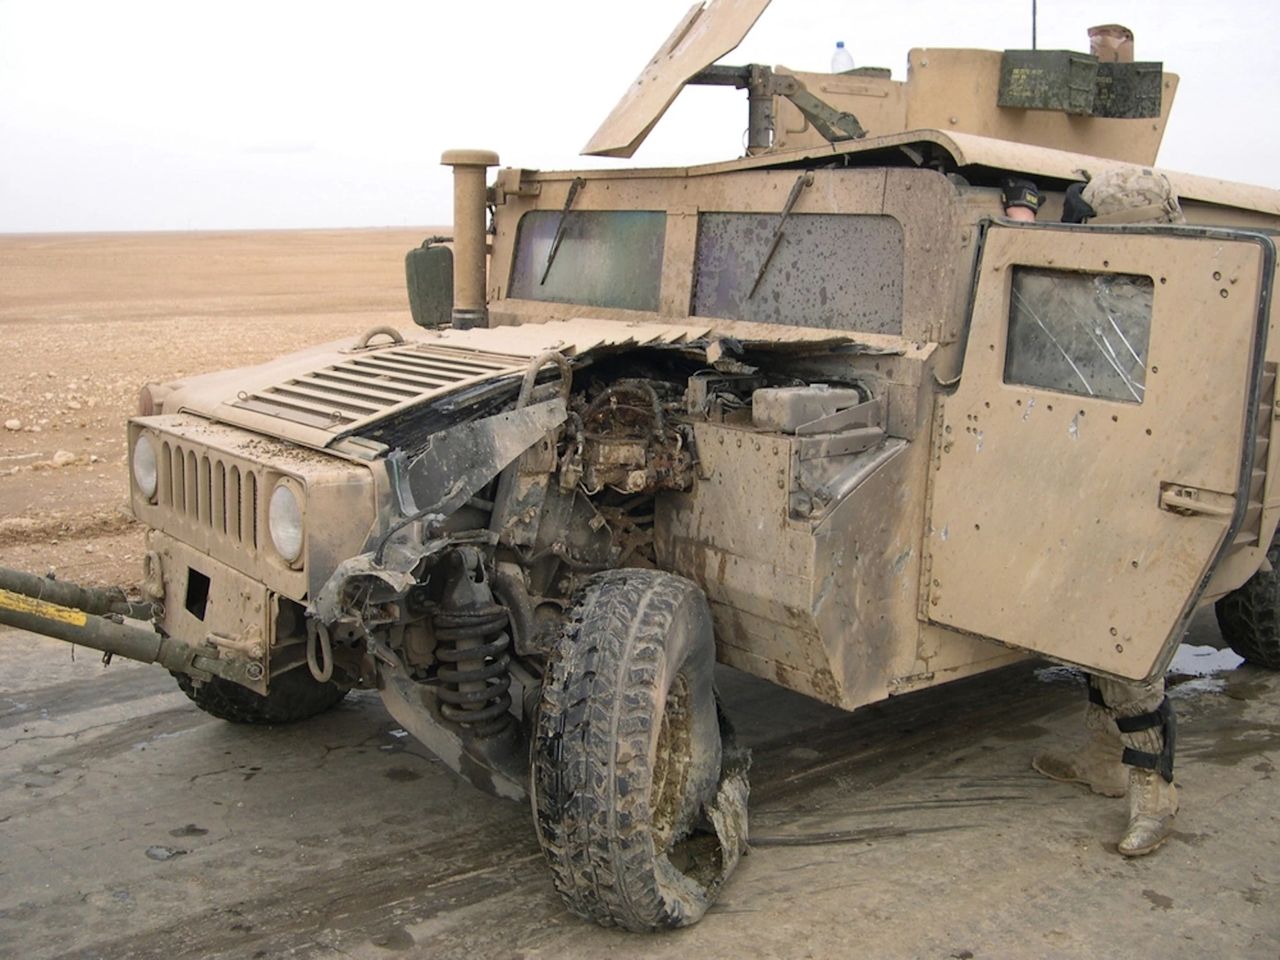 Humvee uszkodzony przez niewielką minę - Irak 2005 (zdjęcie ilustracyjne)